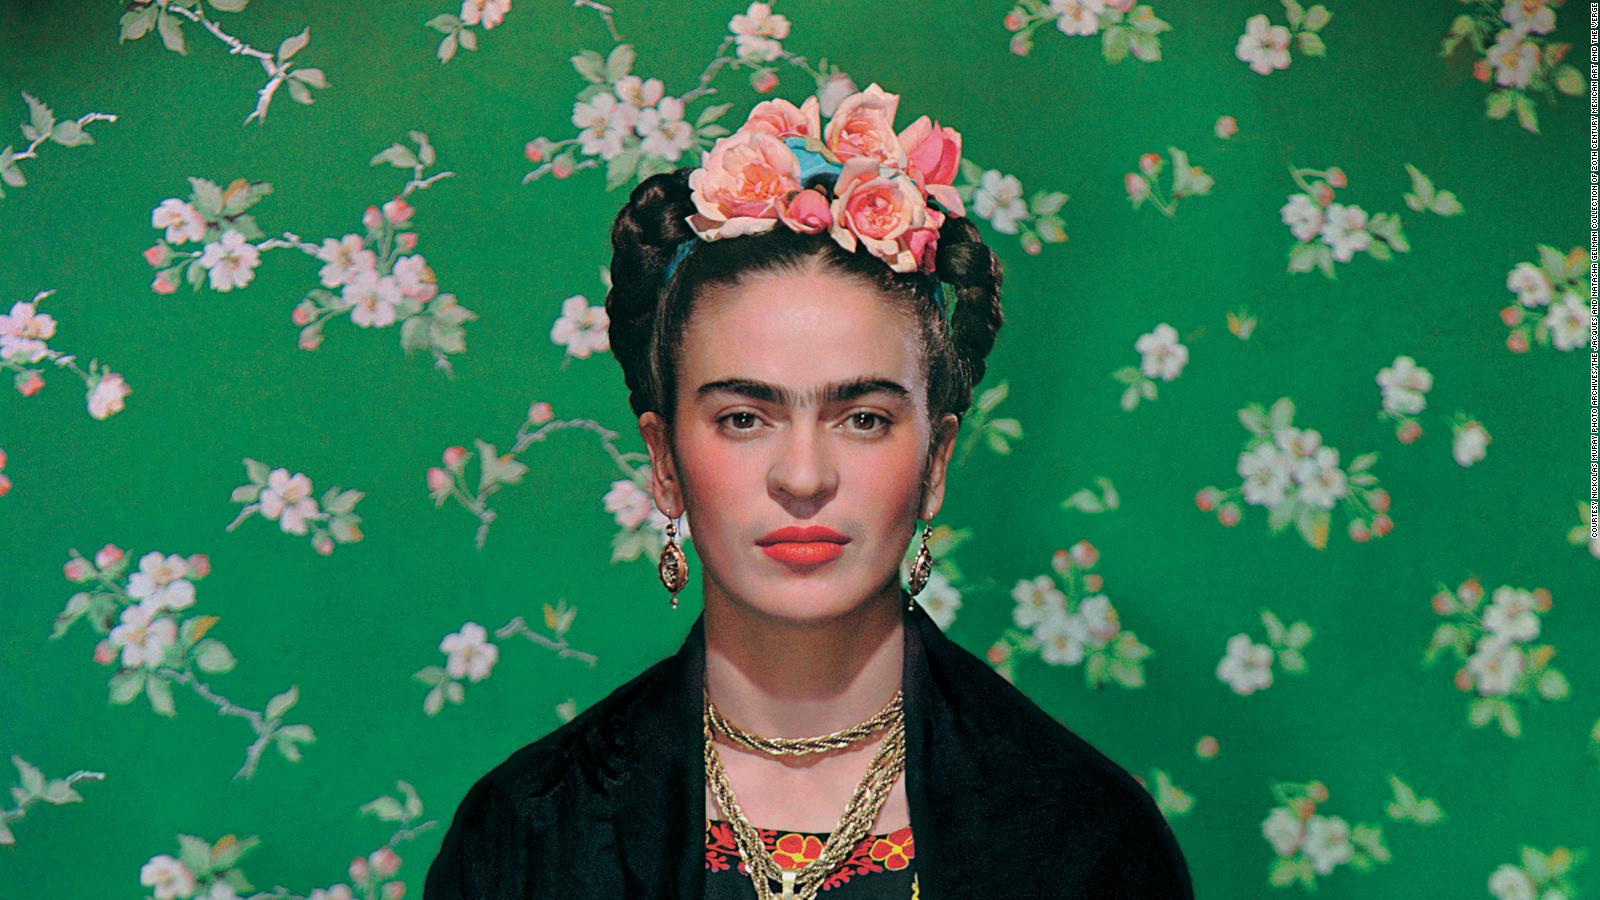 El arte de Frida Kahlo y Diego Rivera llega a Rusia